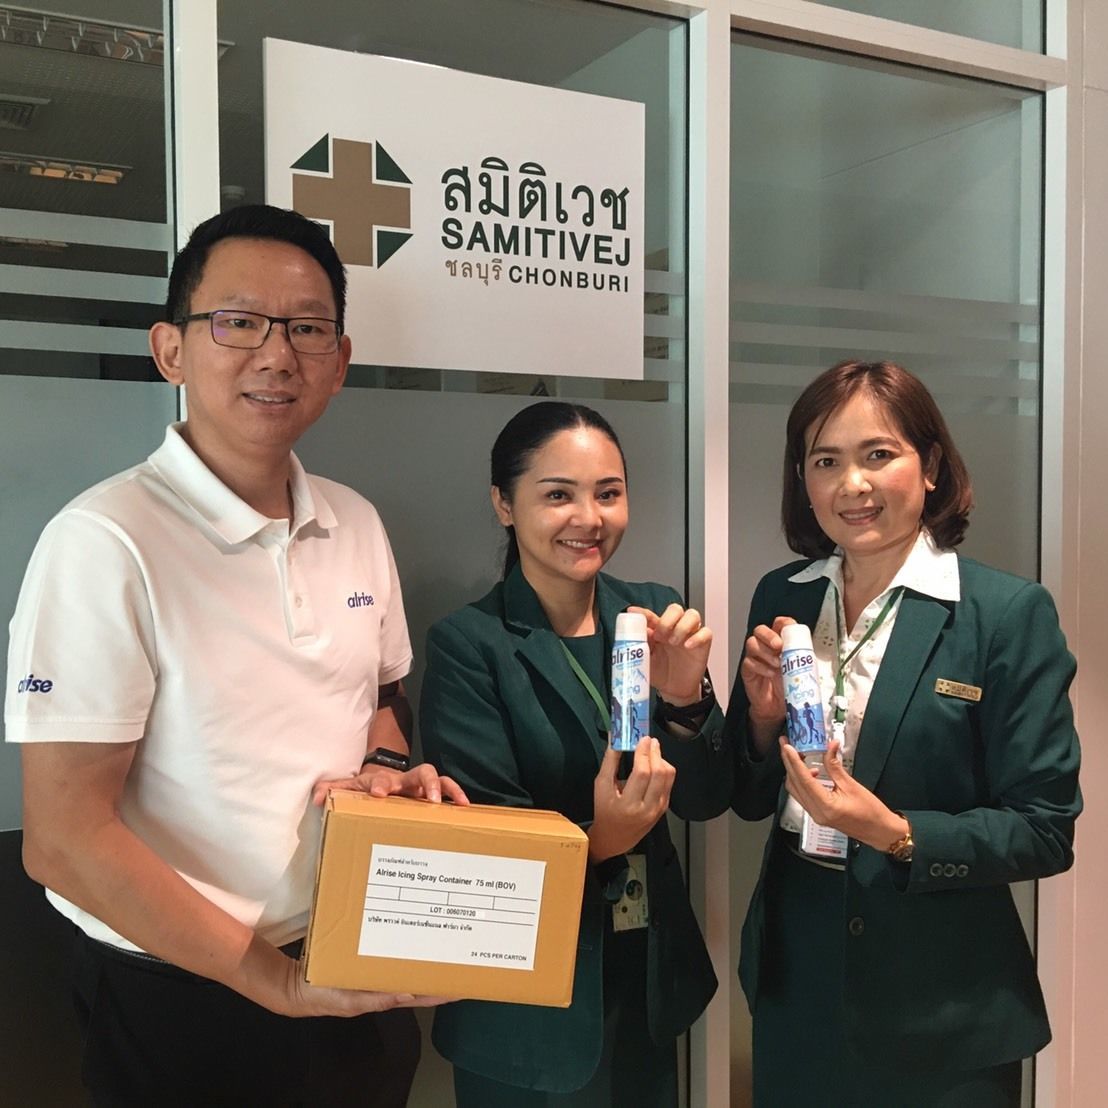 บริษัท พราวด์ อินเตอร์เนชั่นแนล ฟาร์มา จำกัด ได้รับเกียรติให้นำเสนอรายละเอียดของผลิตภัณฑ์สเปรย์เย็น alrise Icing Spray ให้ที่ประชุมองค์กรแพทย์ Samitivej Chonburi Hospital โรงพยาบาลสมิติเวช ชลบุรี ประจ